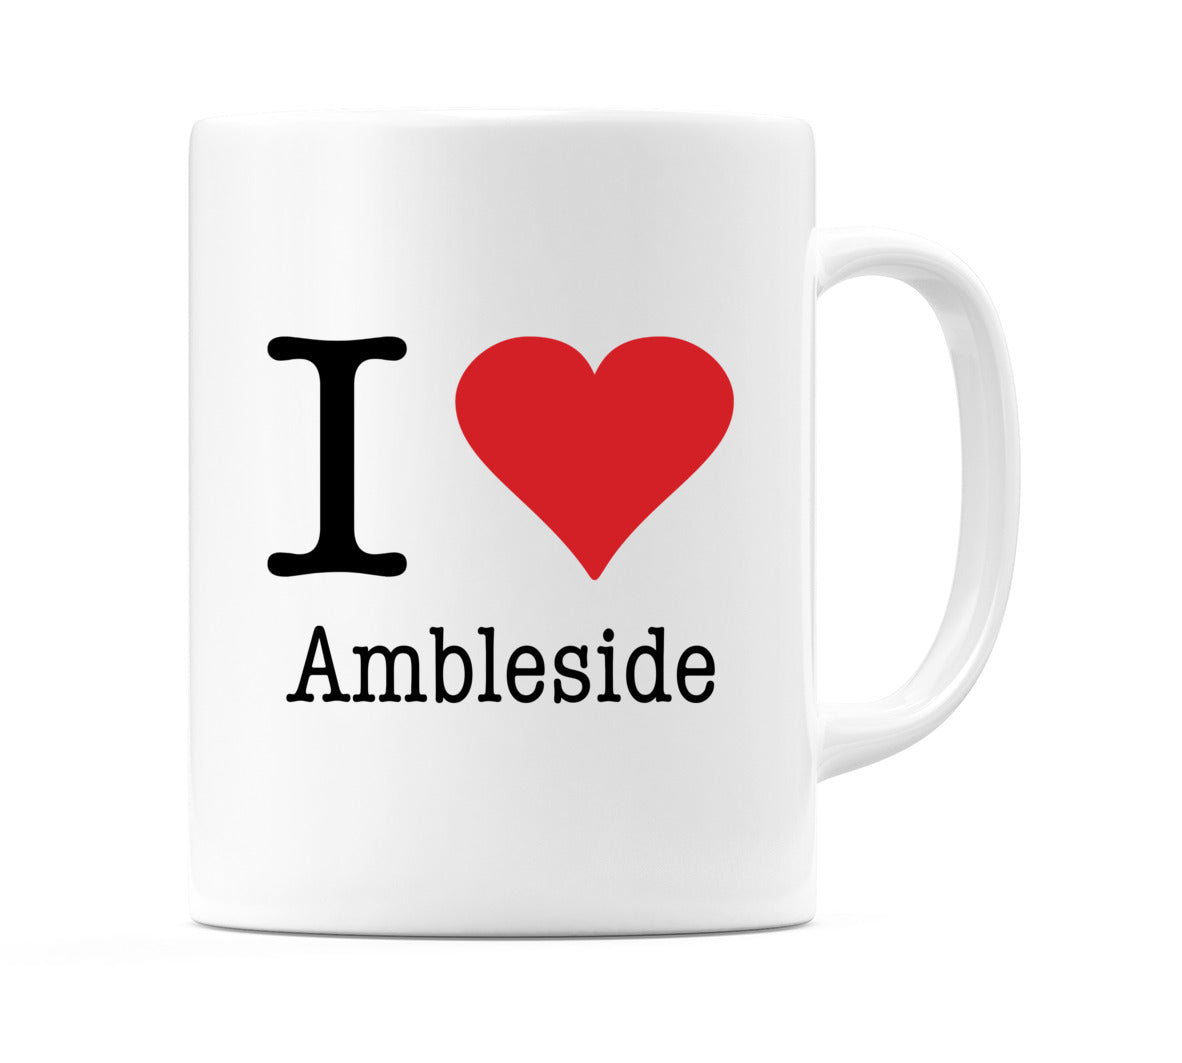 I Love Ambleside Mug